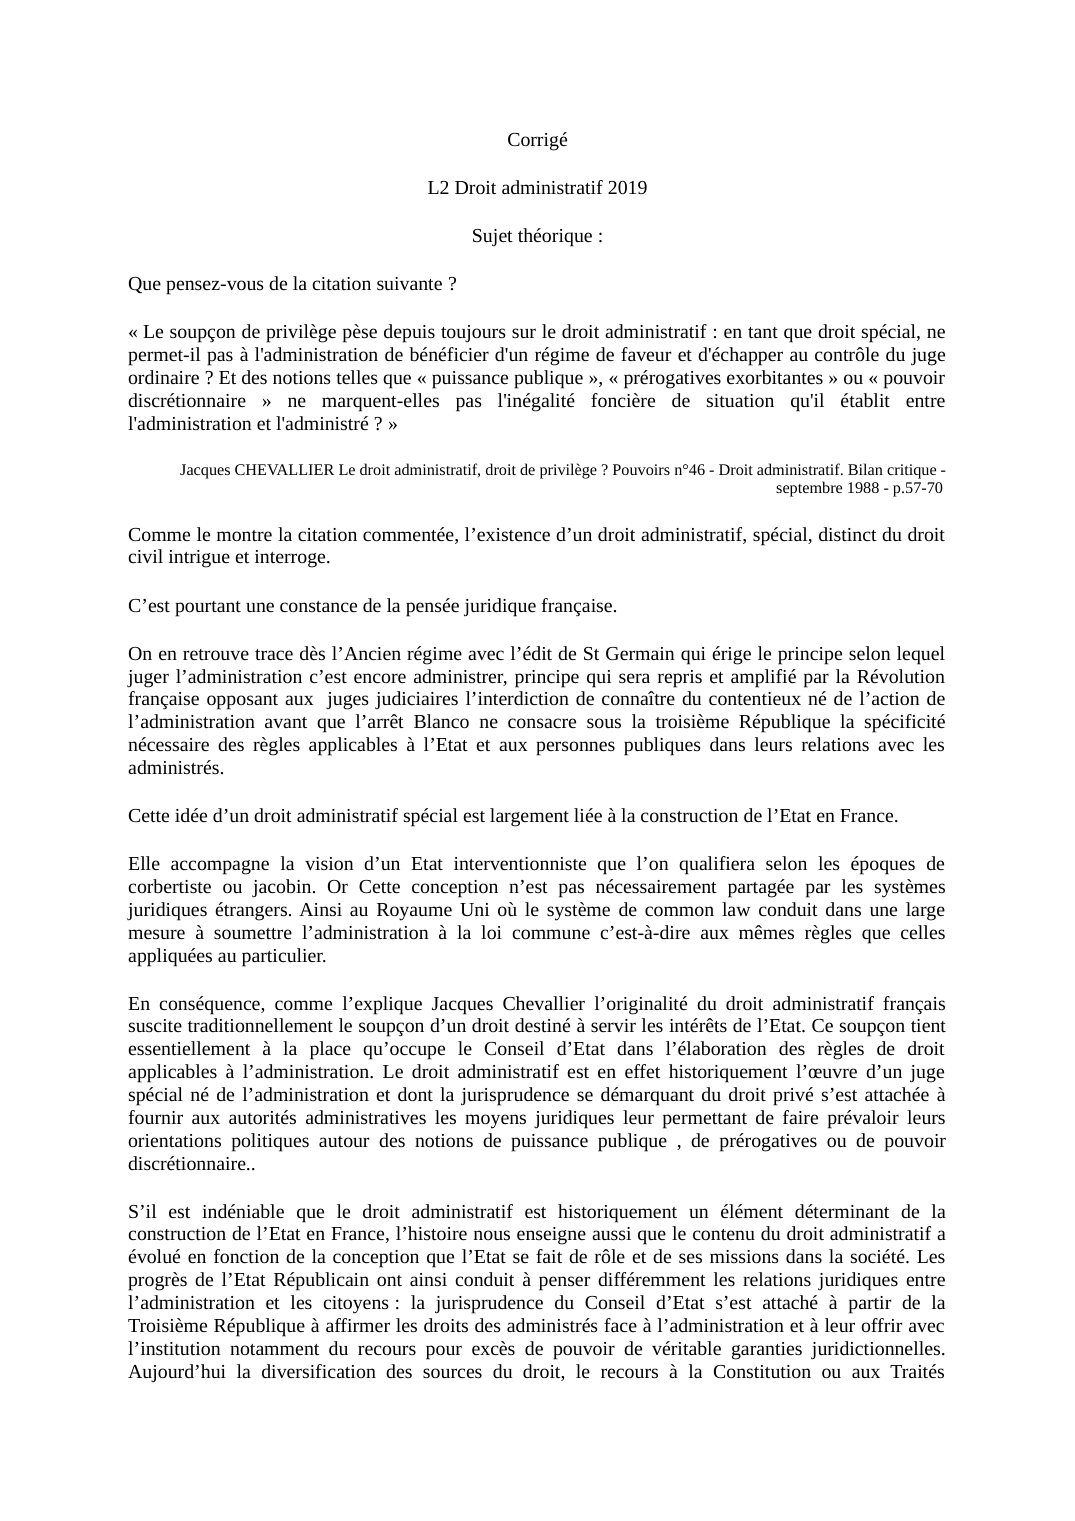 Prévisualisation du document Jacques CHEVALLIER: Le droit administratif, droit de privilège ?